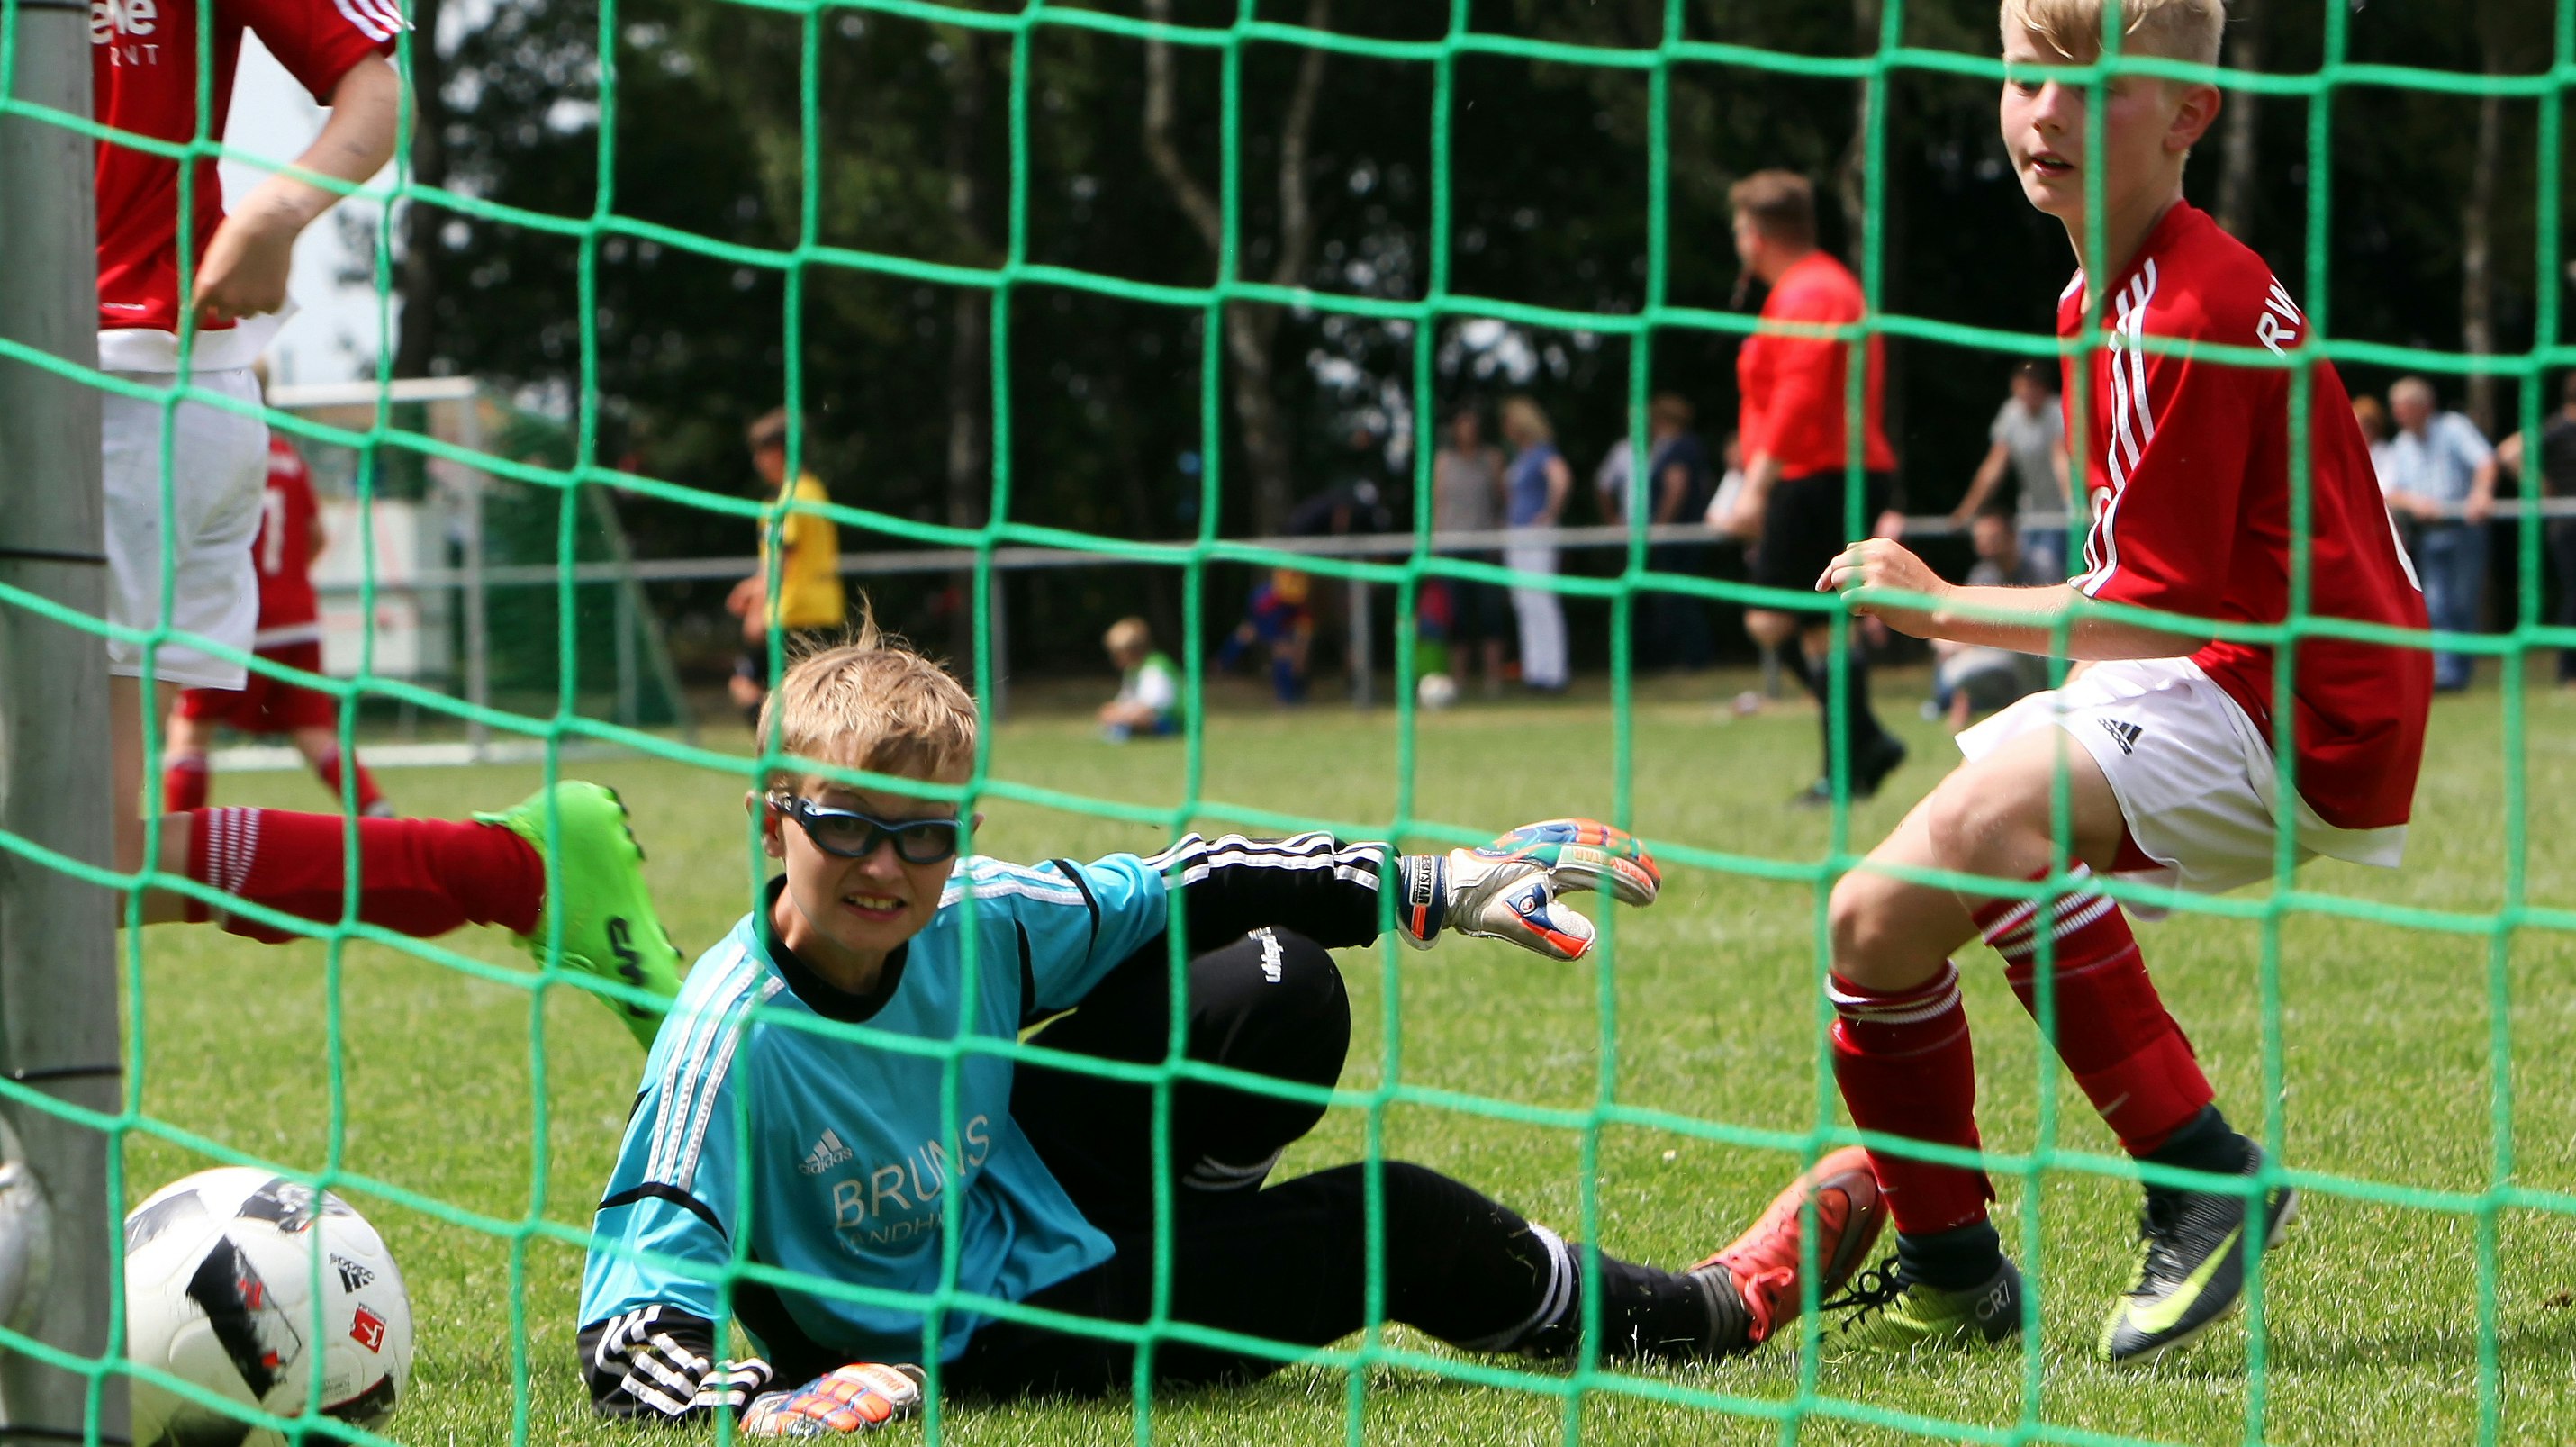 Hoffen und Bangen auf dem grünen Rasen: Der Nachwuchs darf in Kürze endlich wieder Fußball spielen. Foto: Schikora